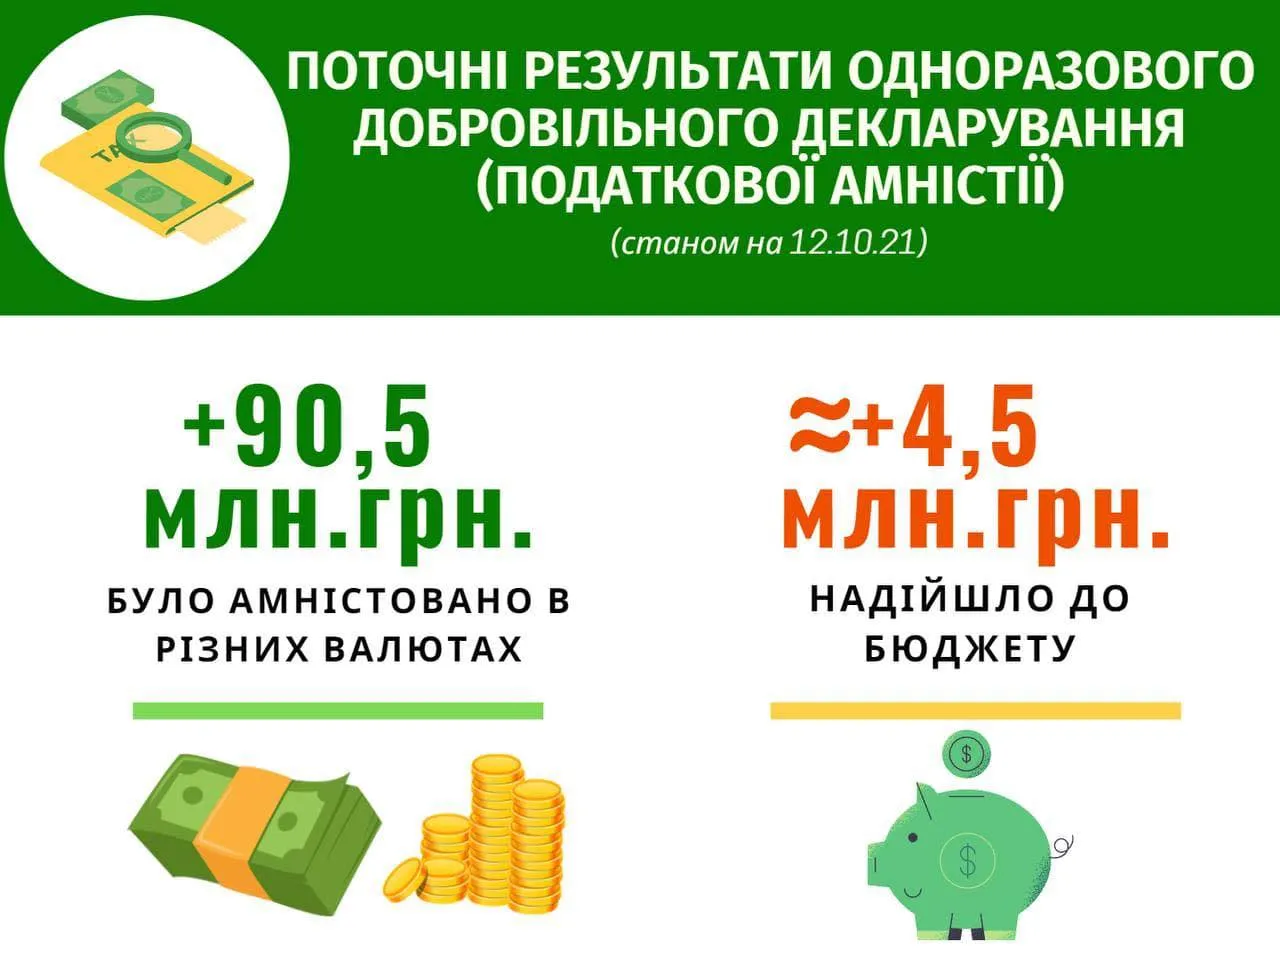 результаты налоговой амнистии: сколько заплатили и закларувалы украинцы